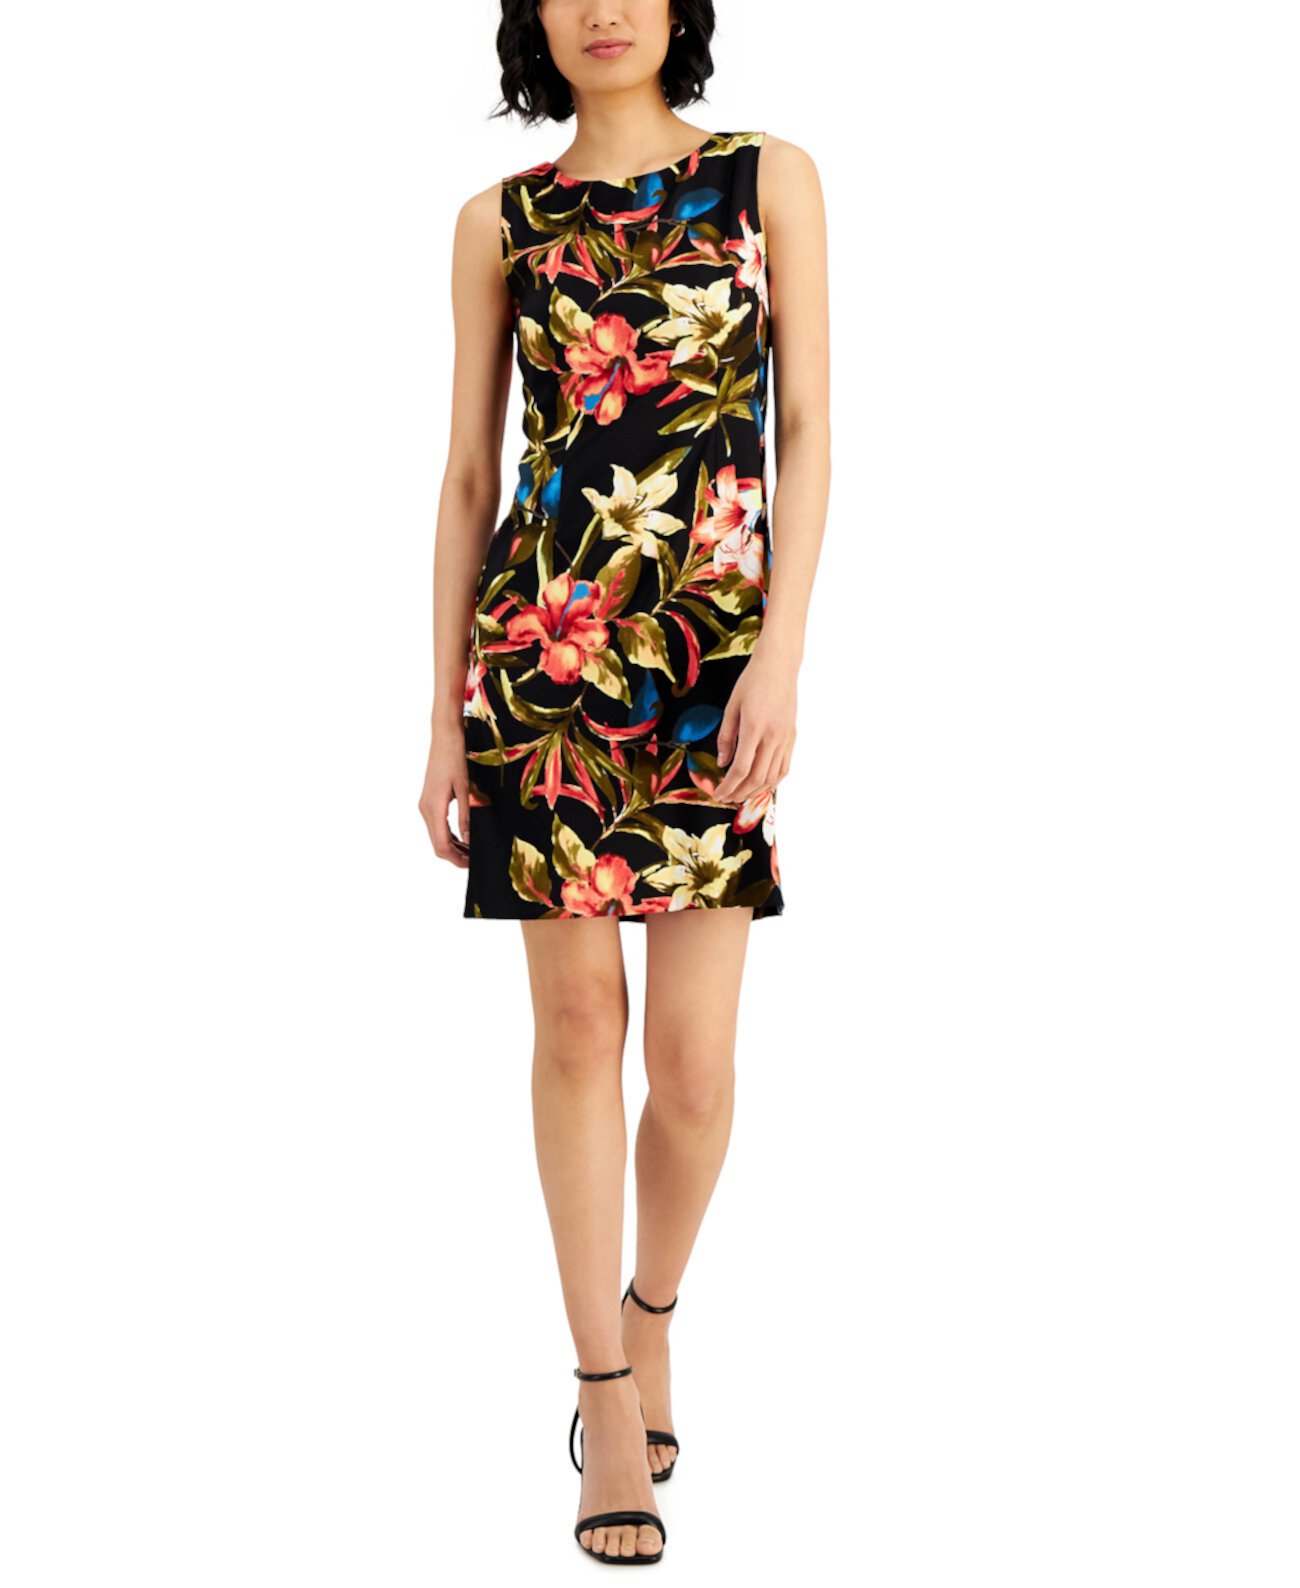 Женское платье-футляр с цветочным принтом Connected